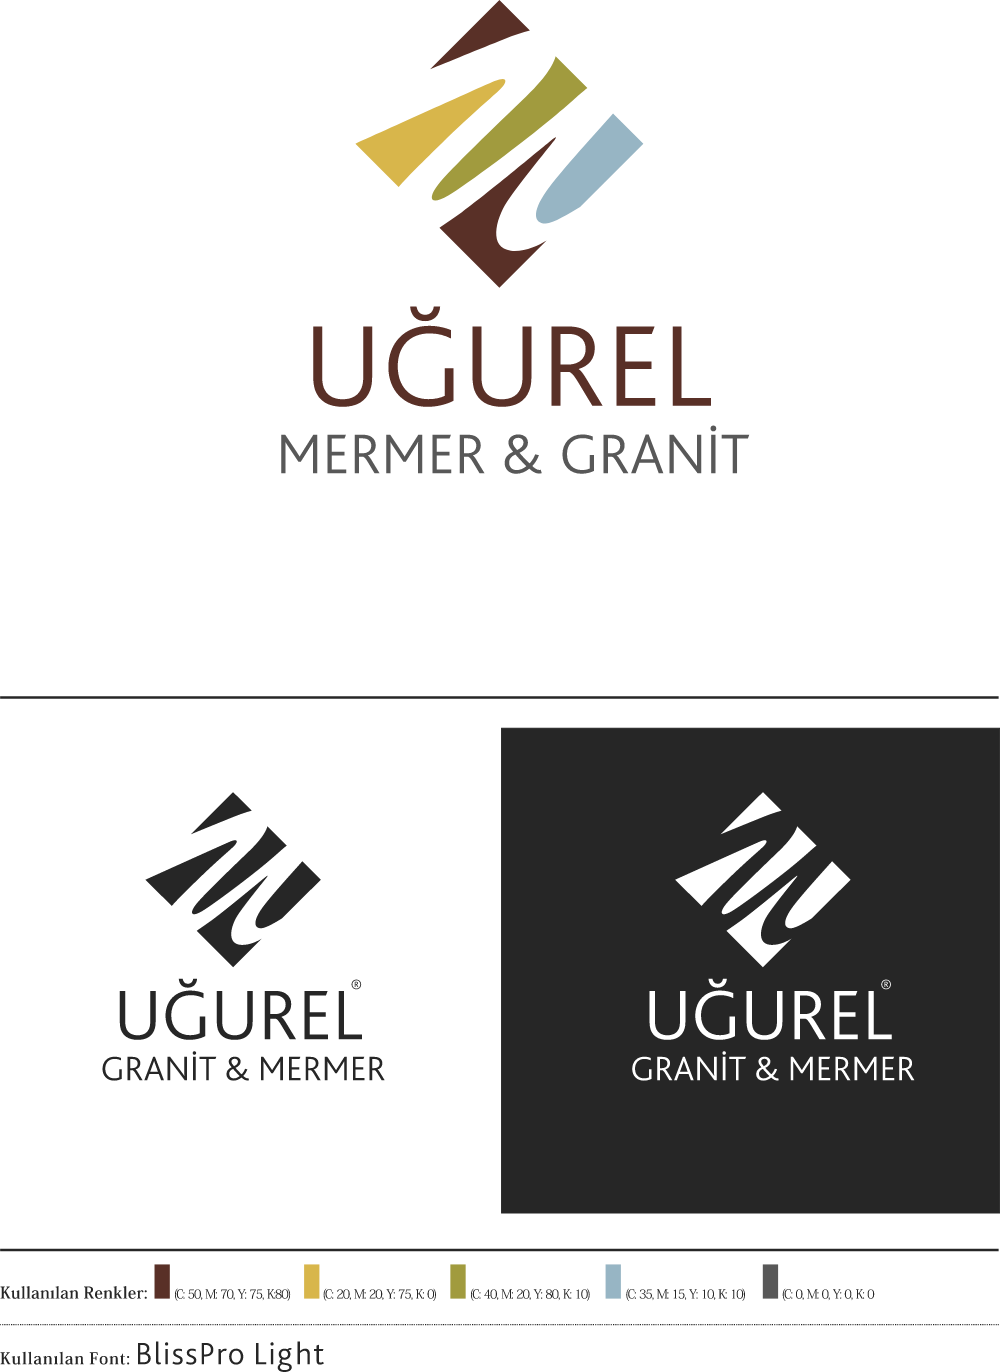 Ugurel Mermer & Granit Logo Logos